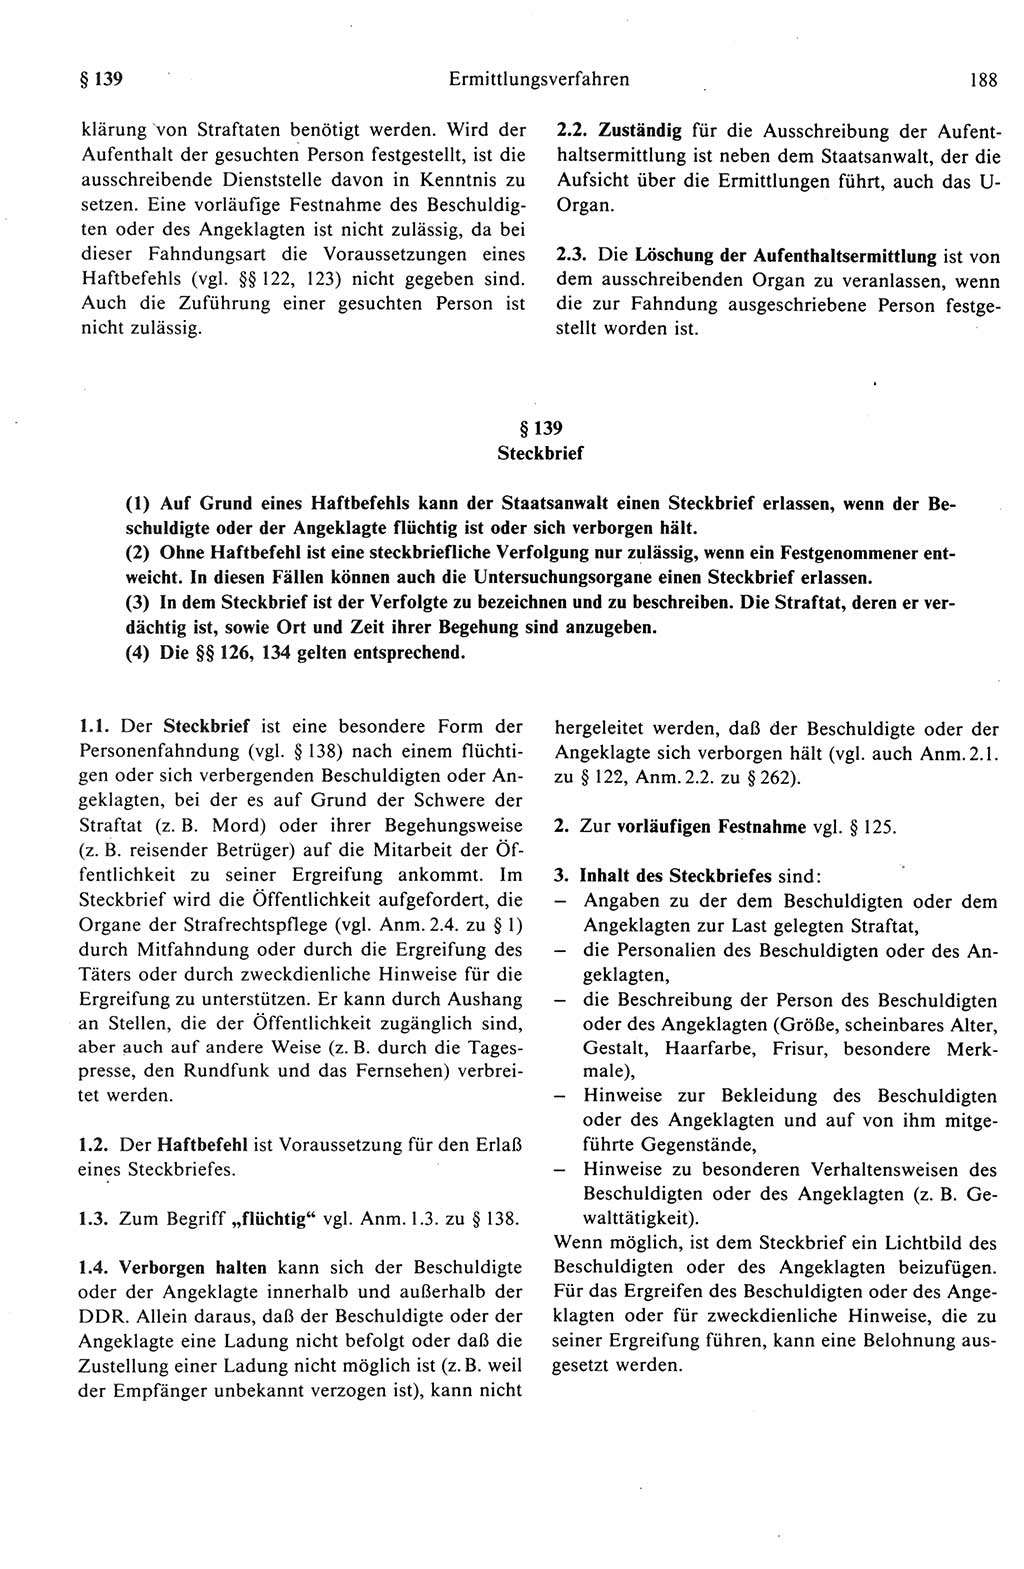 Strafprozeßrecht der DDR (Deutsche Demokratische Republik), Kommentar zur Strafprozeßordnung (StPO) 1989, Seite 188 (Strafprozeßr. DDR Komm. StPO 1989, S. 188)